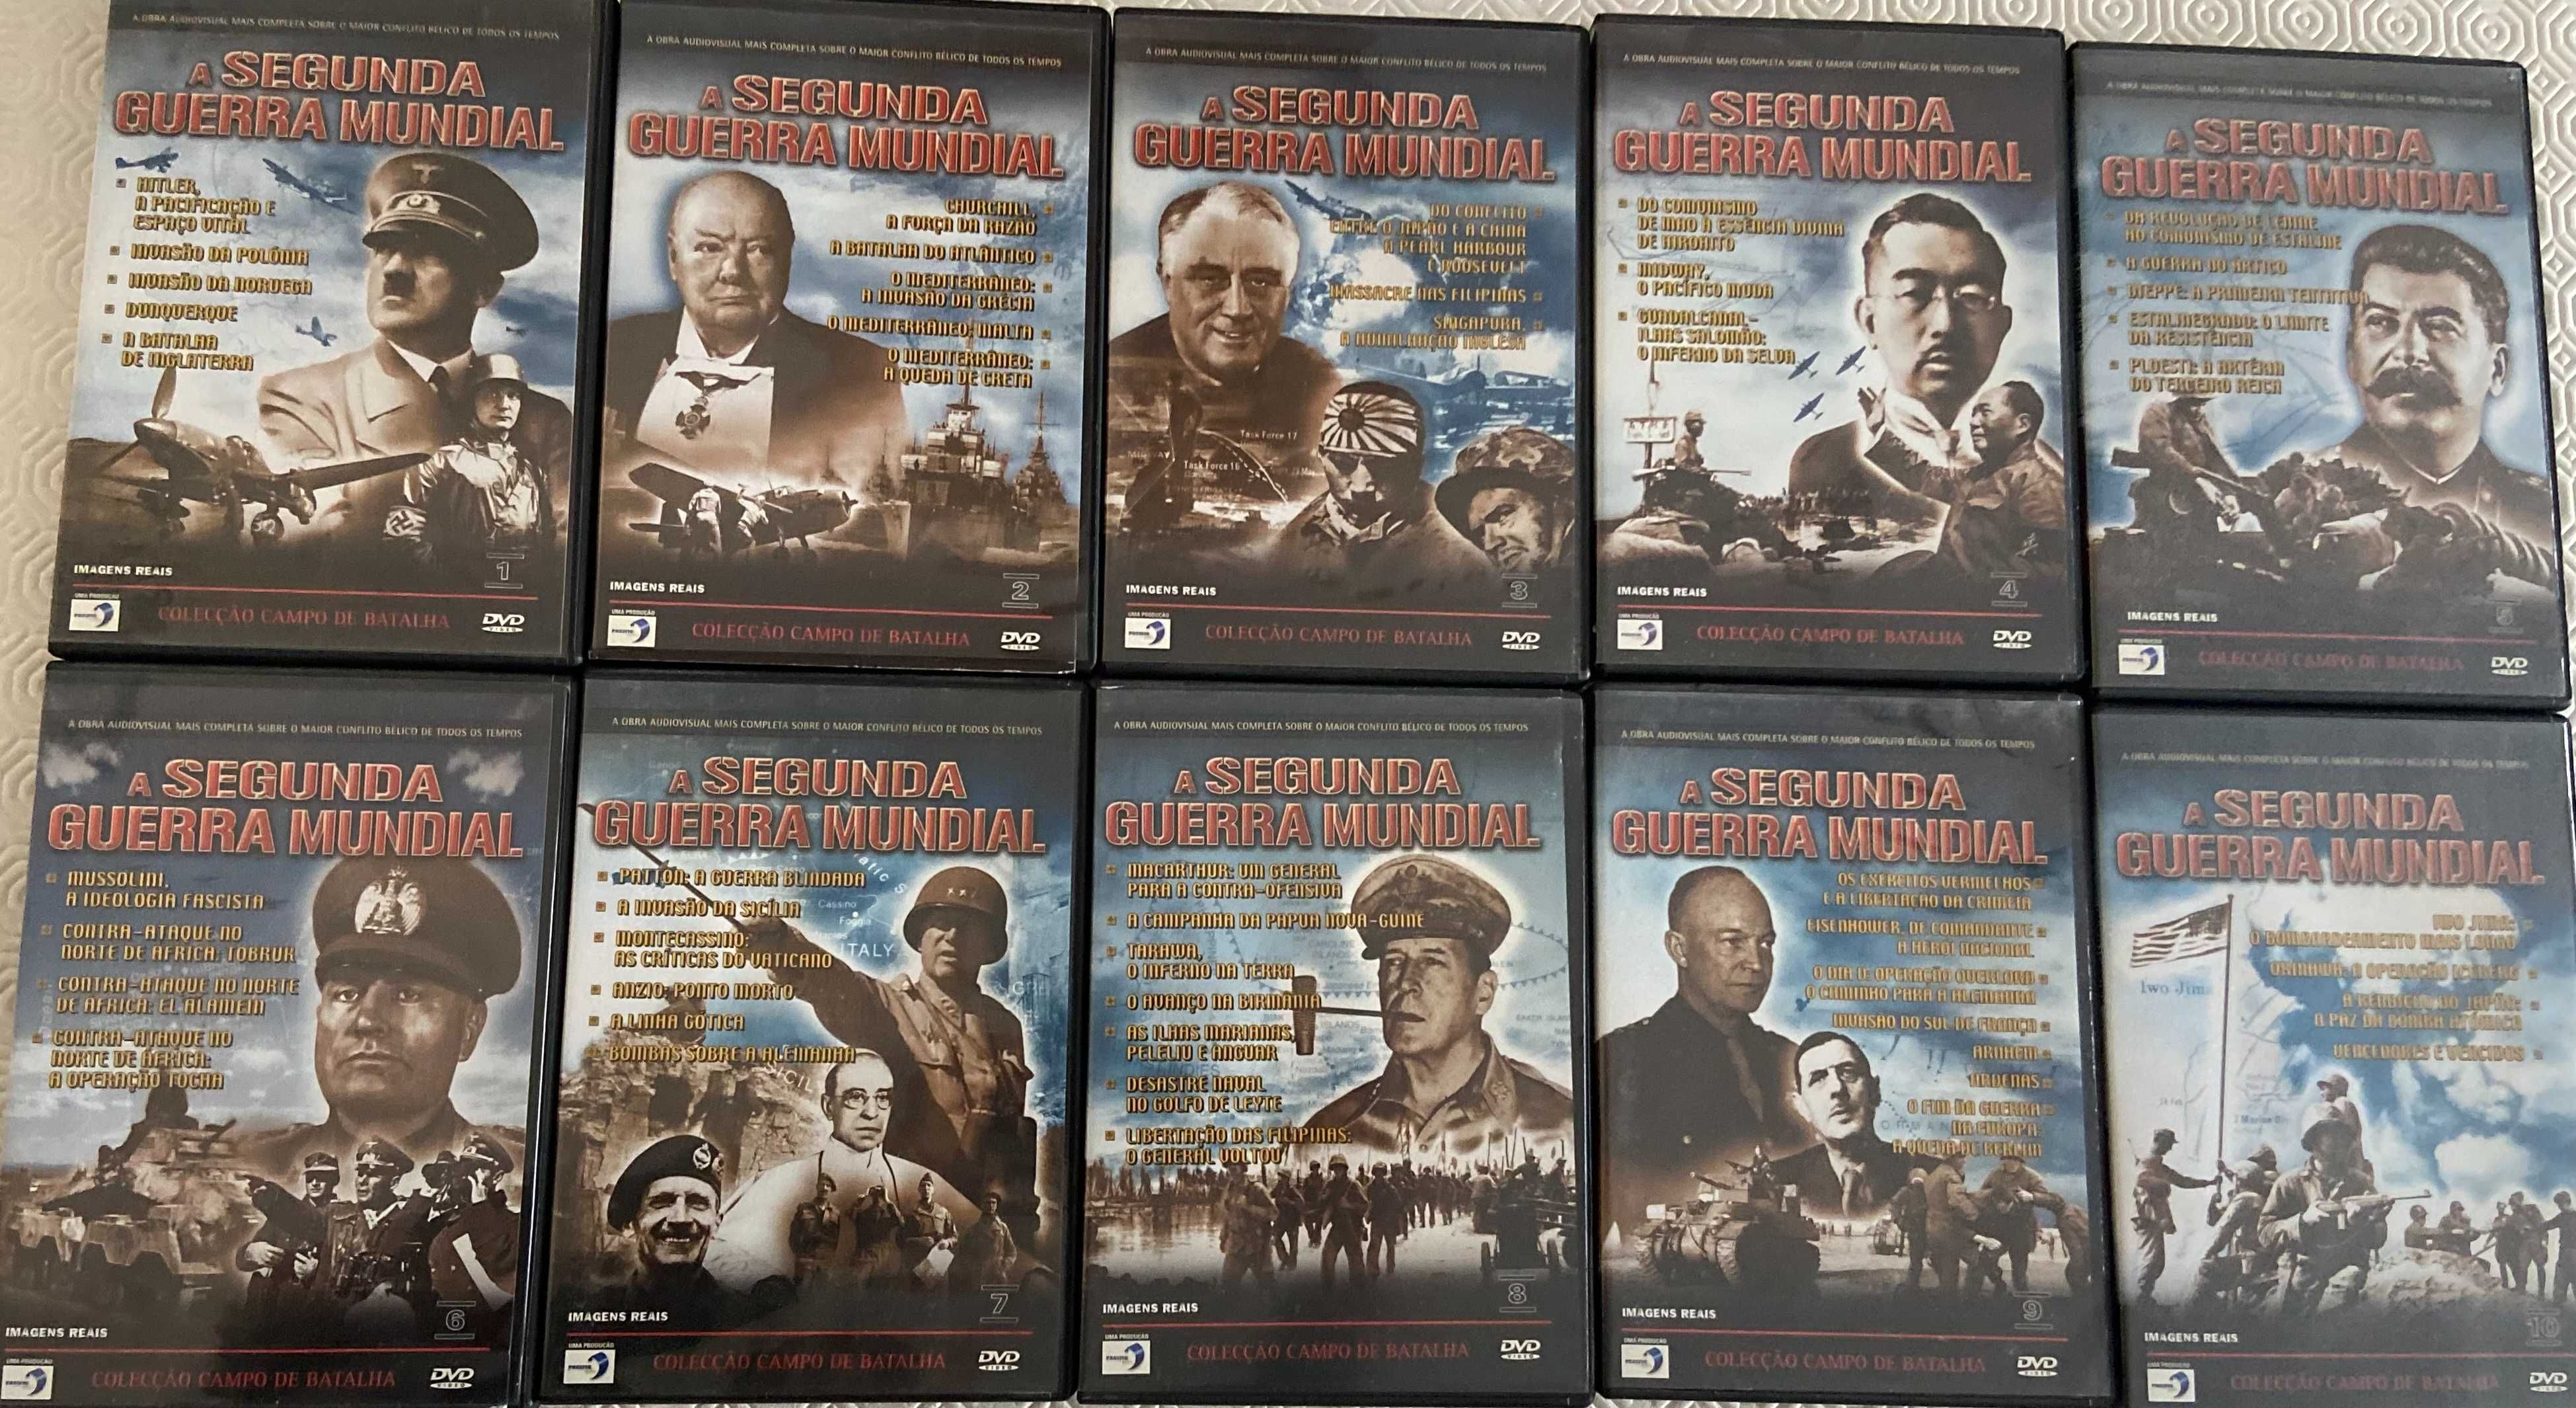 Coleção Completa DVD's Documentário Segunda Guerra Mundial